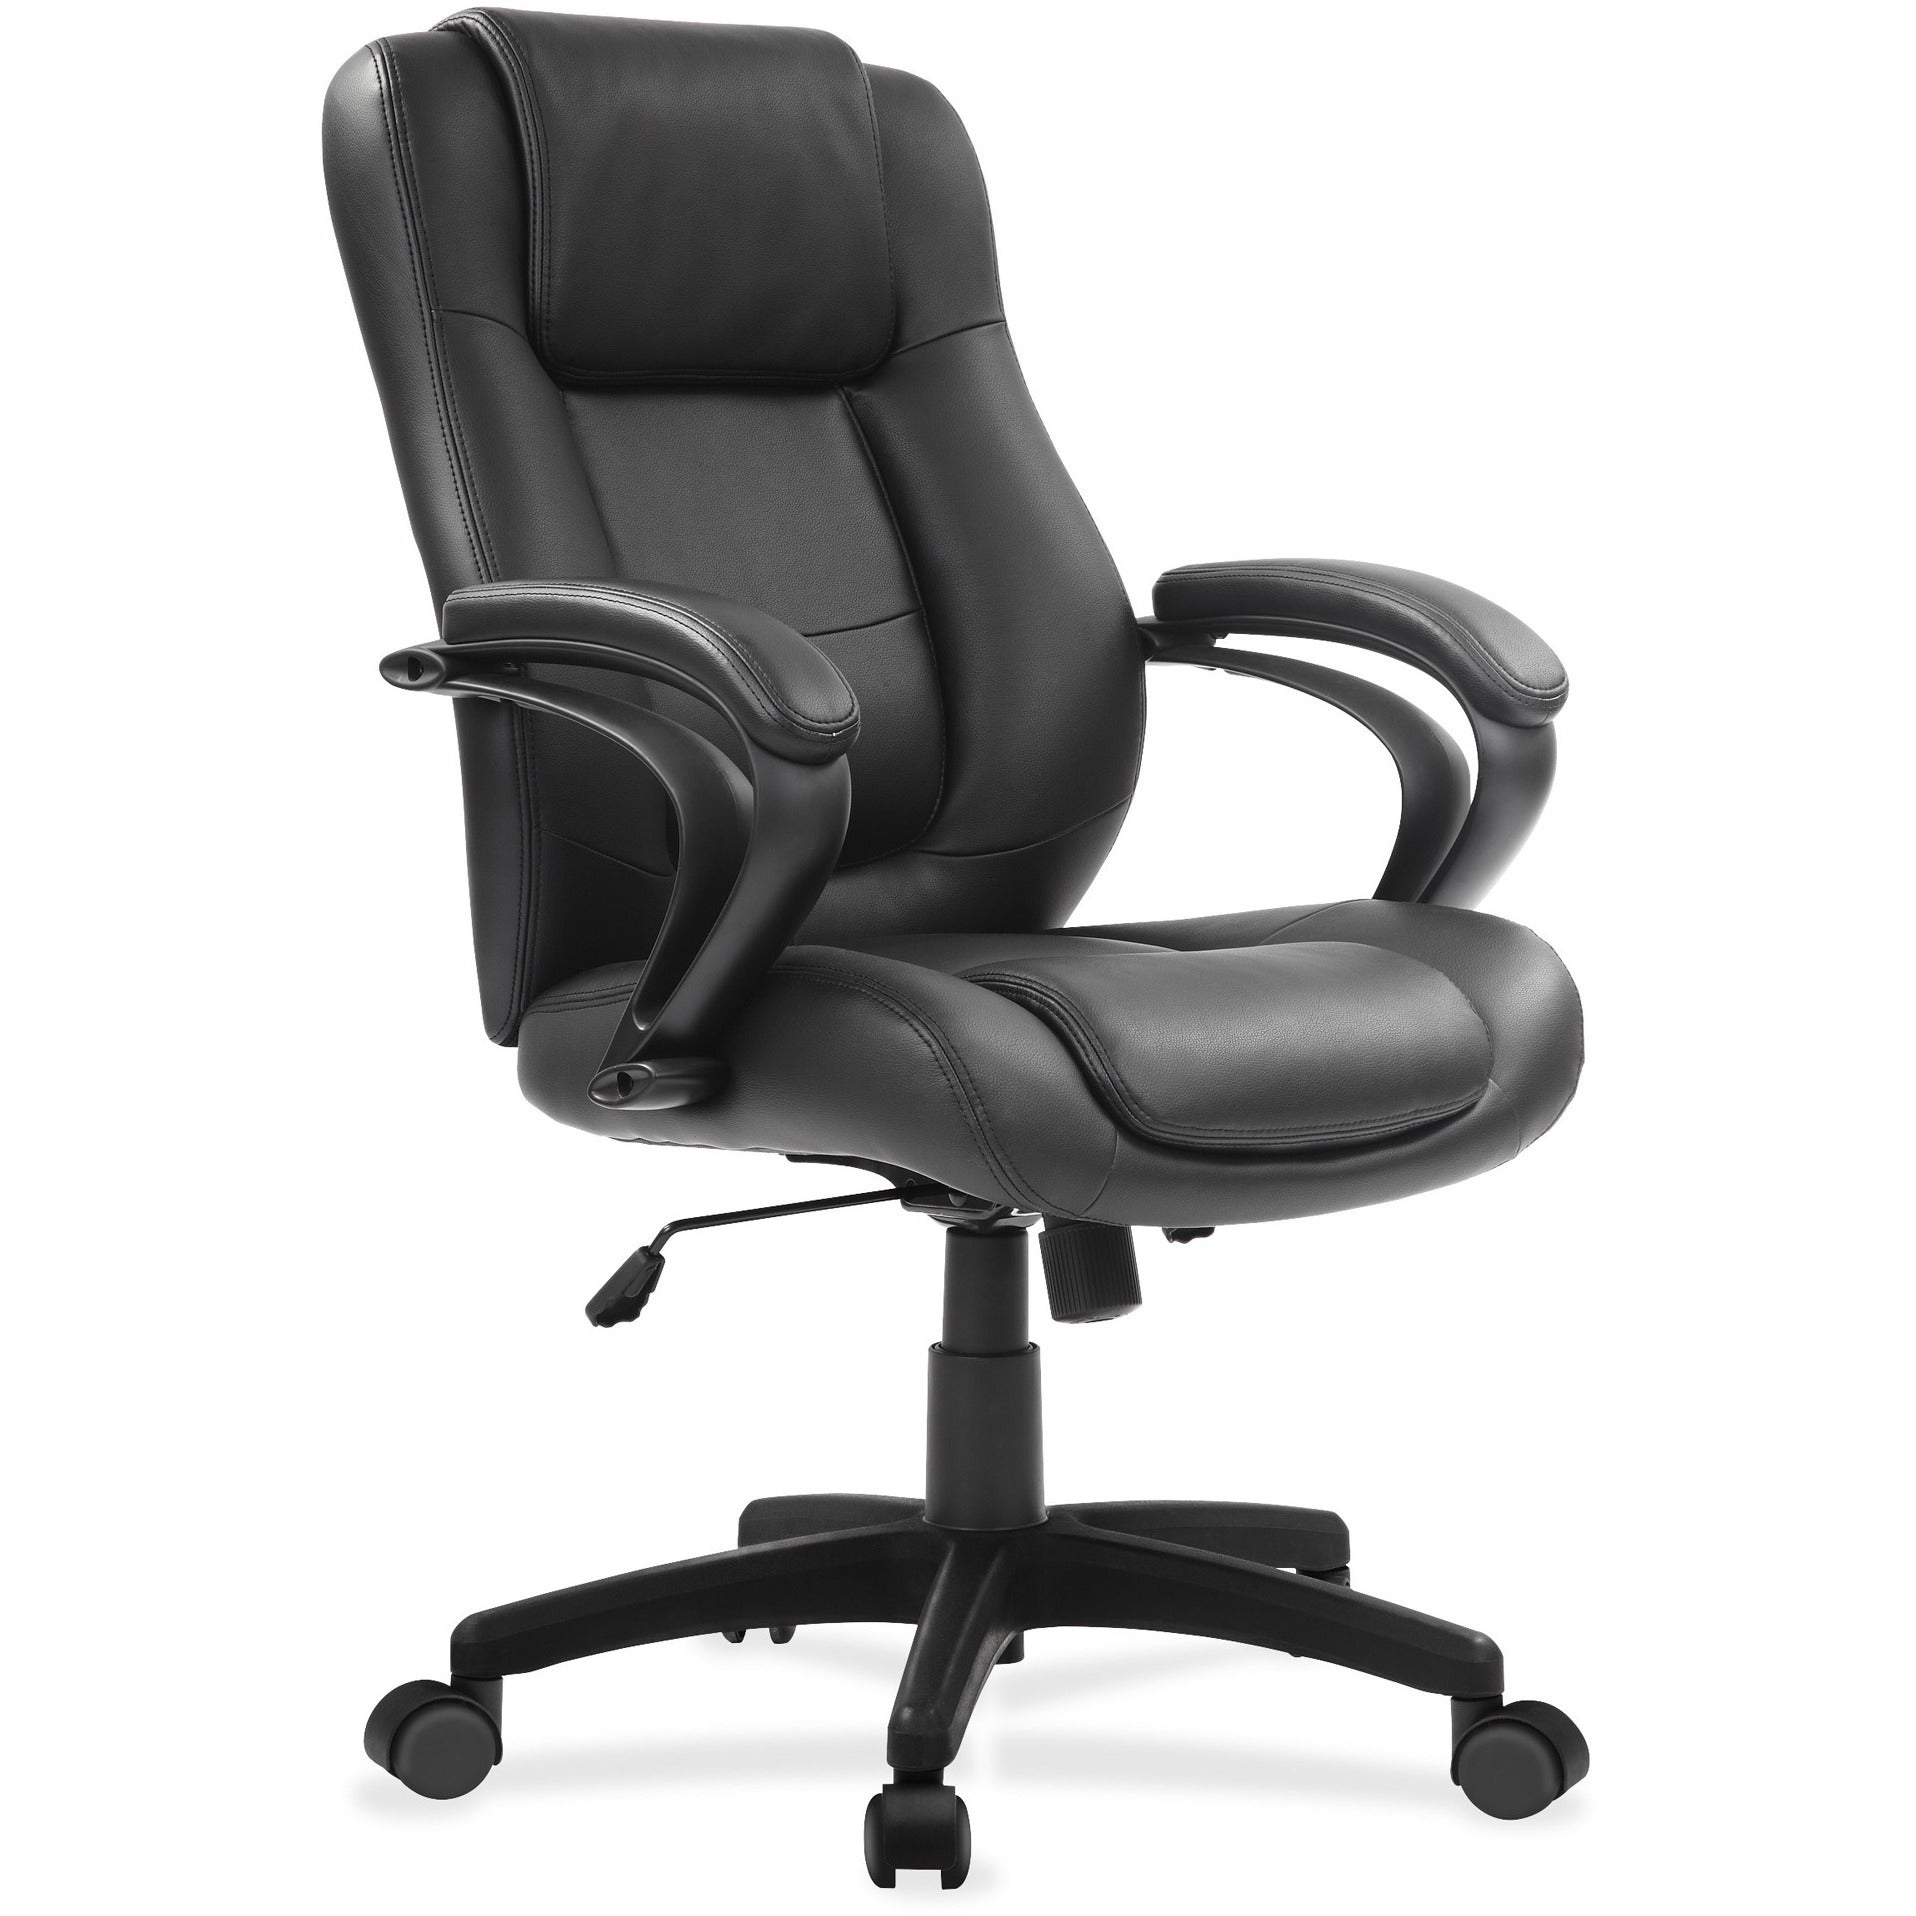 eurotech-pembroke-mid-back-executive-chair-black-bonded-leather-seat-black-bonded-leather-back-low-back-5-star-base-1-each_eutle522 - 4